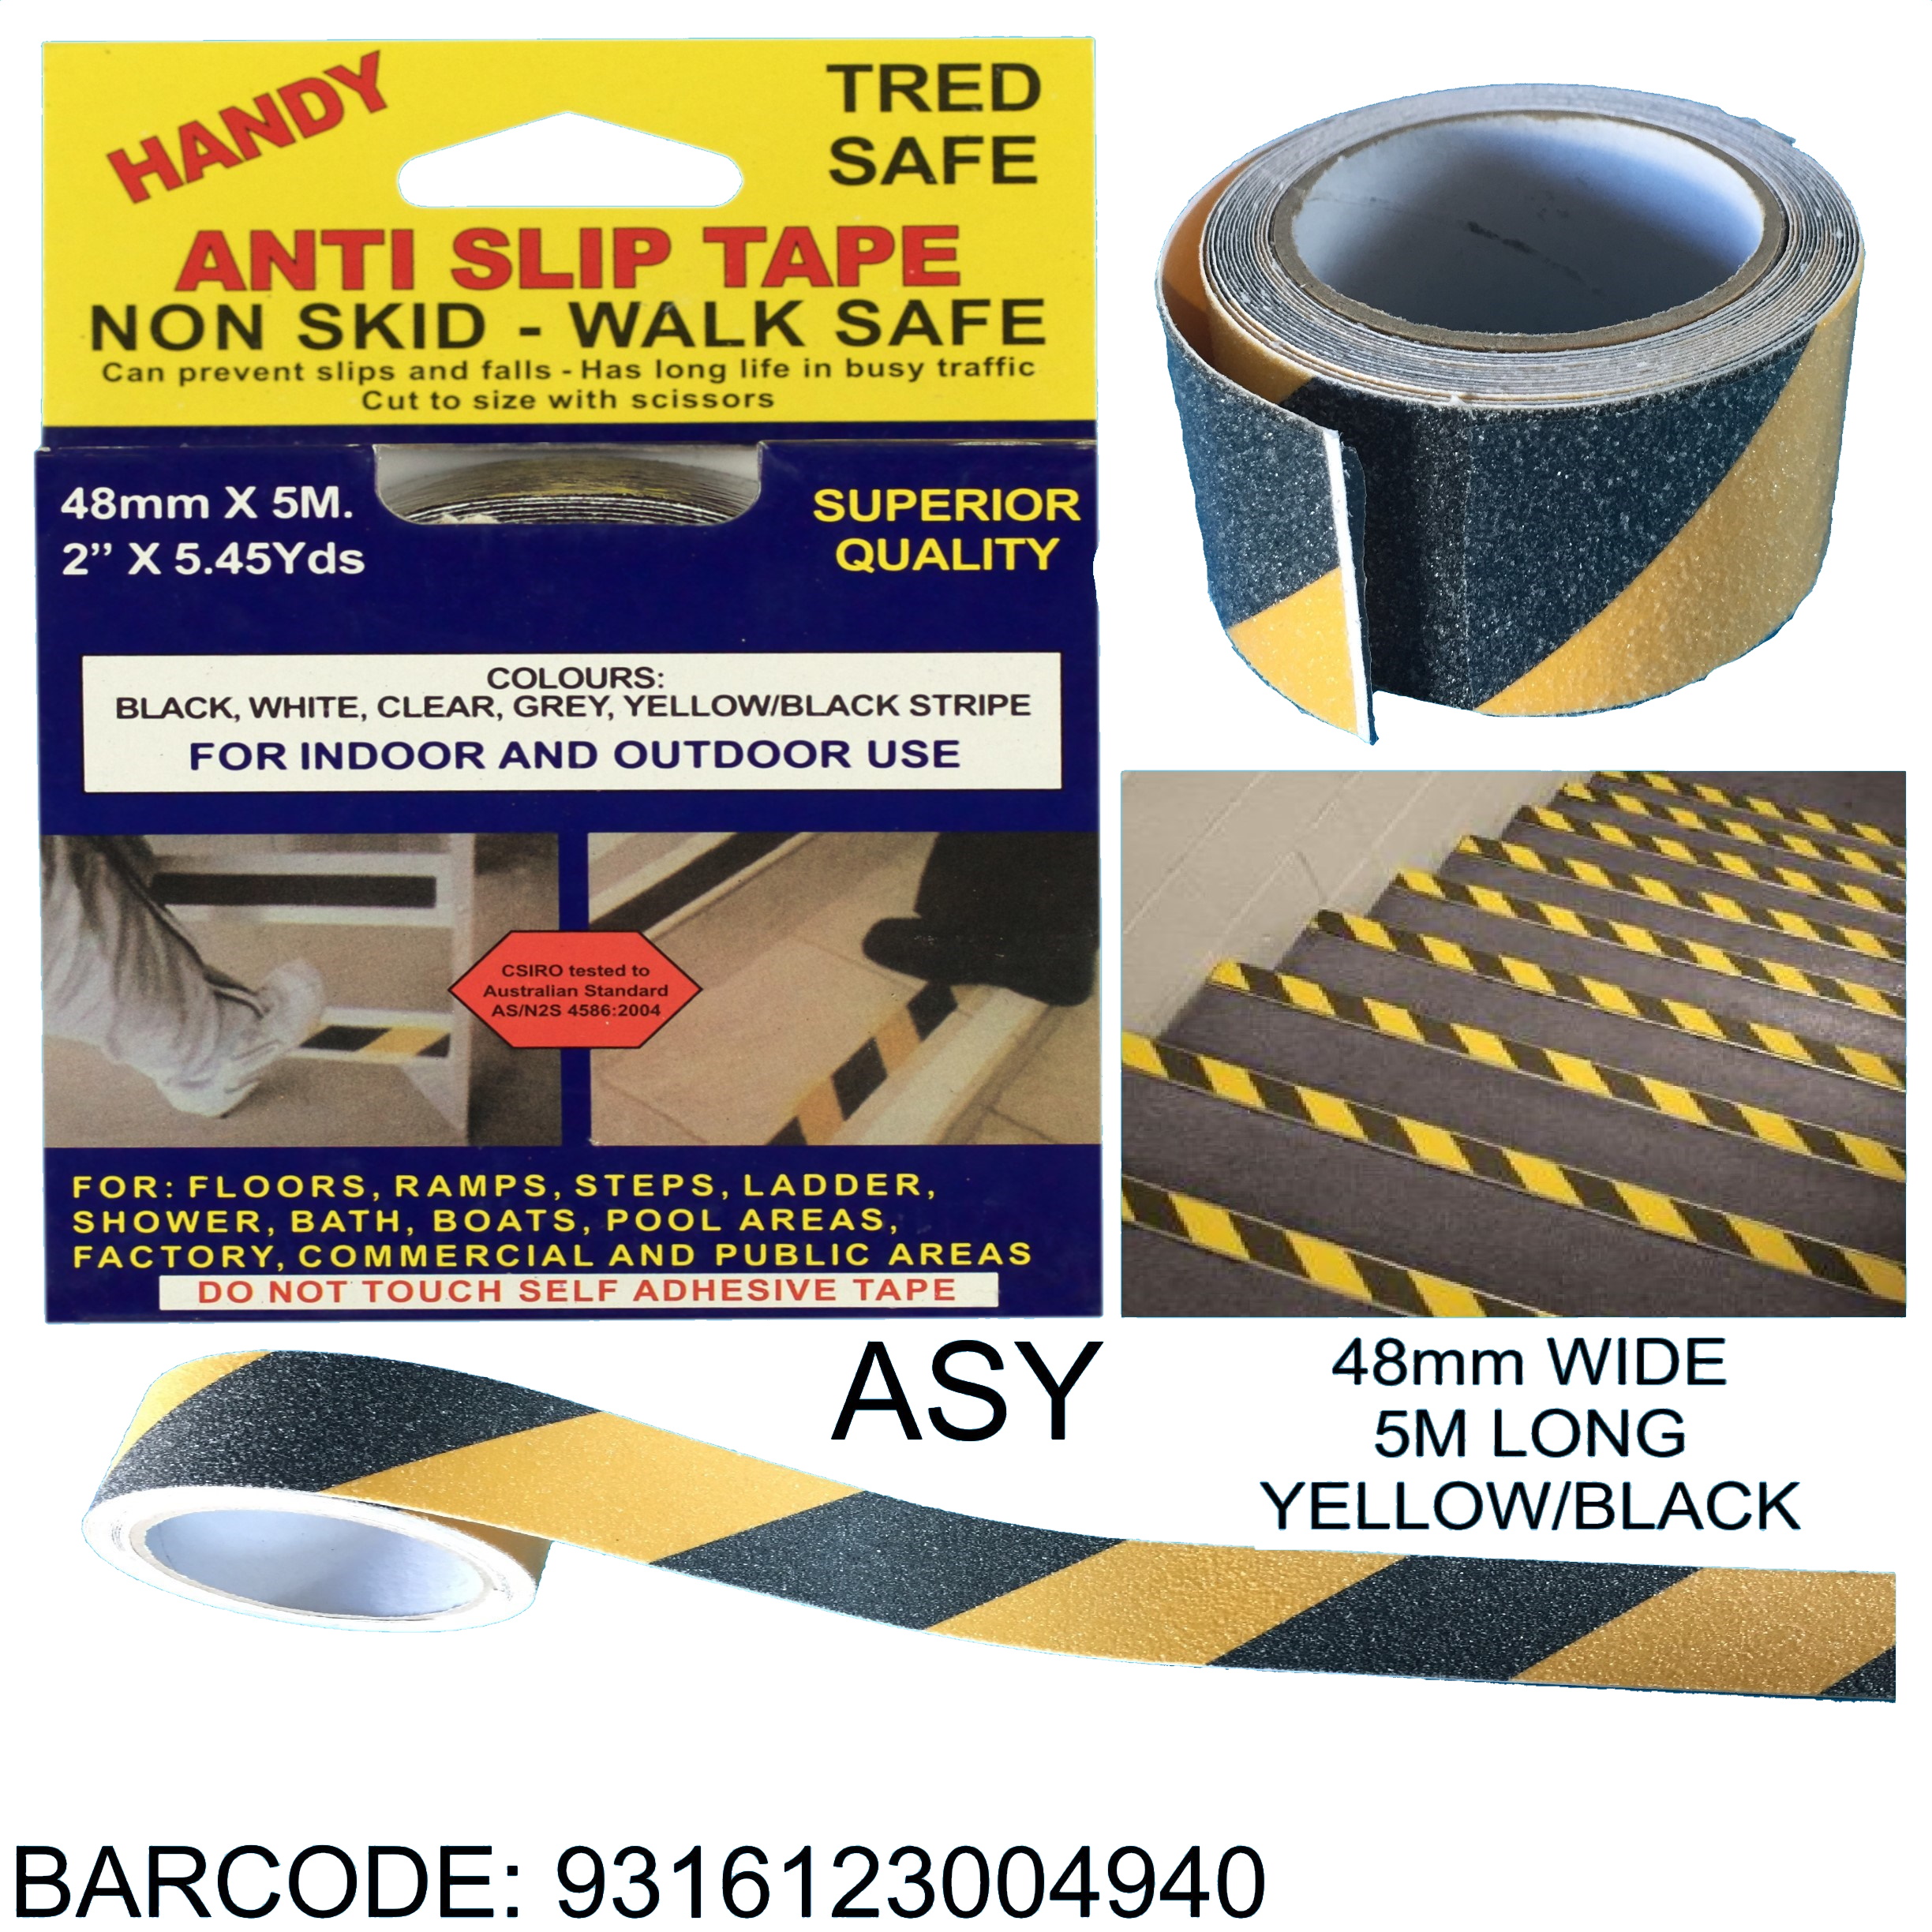 ASY – Yellow/Black Anti-Slip Tape - Handy Hardware